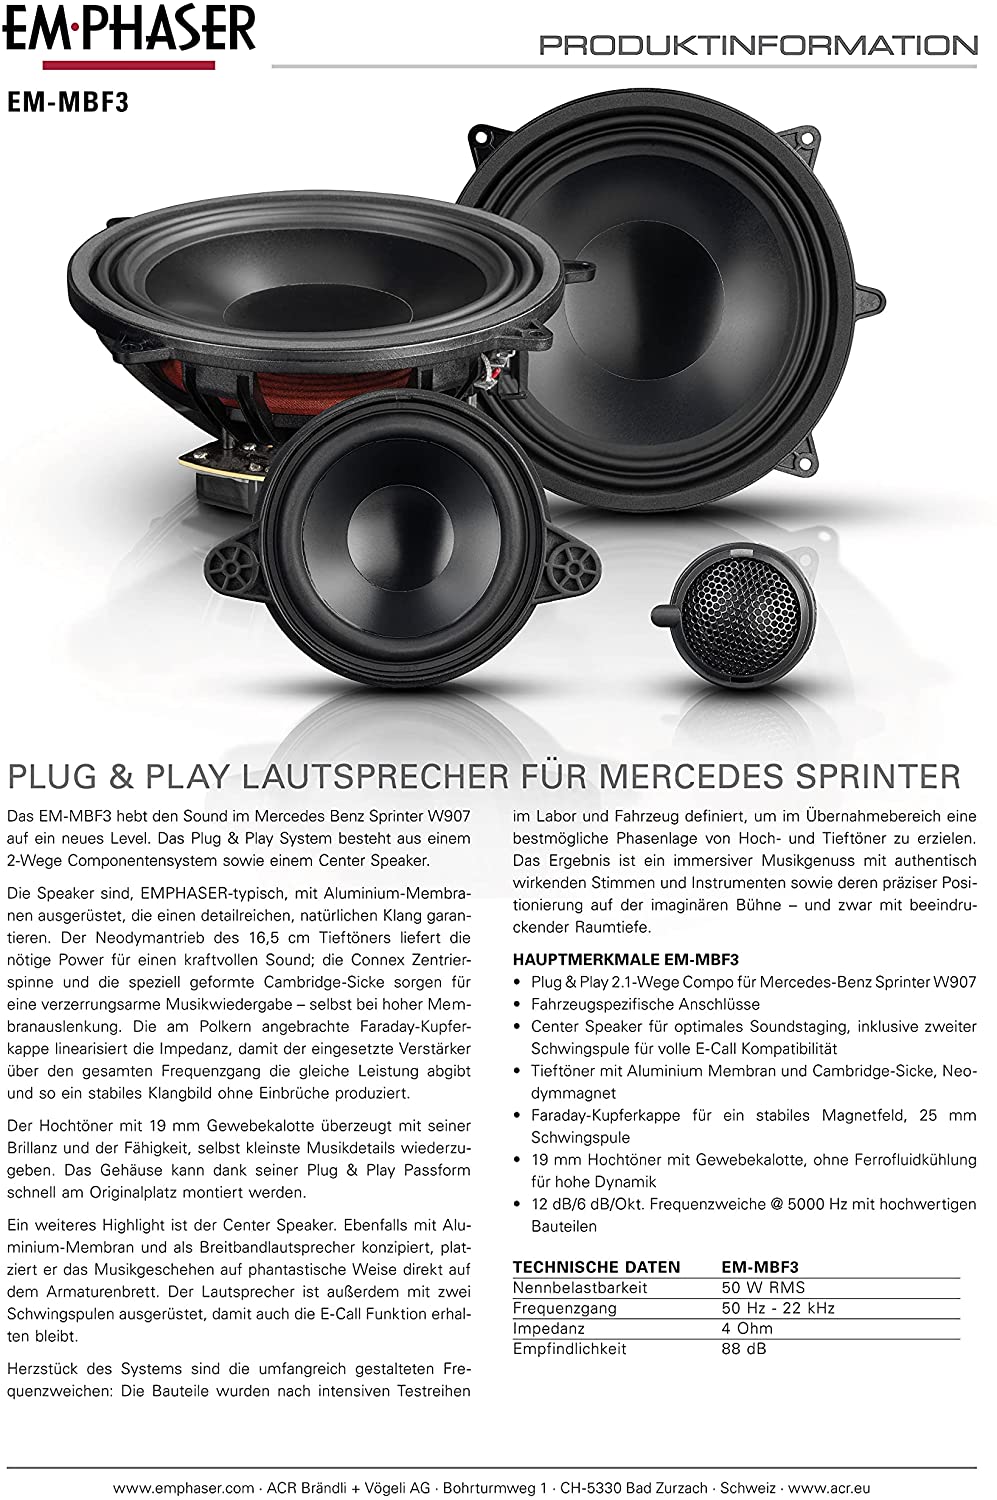 EMPHASER EM-MBF3 - 2.1 Frontsystem für Mercedes Sprinter VS30/W907 Lautsprecher 